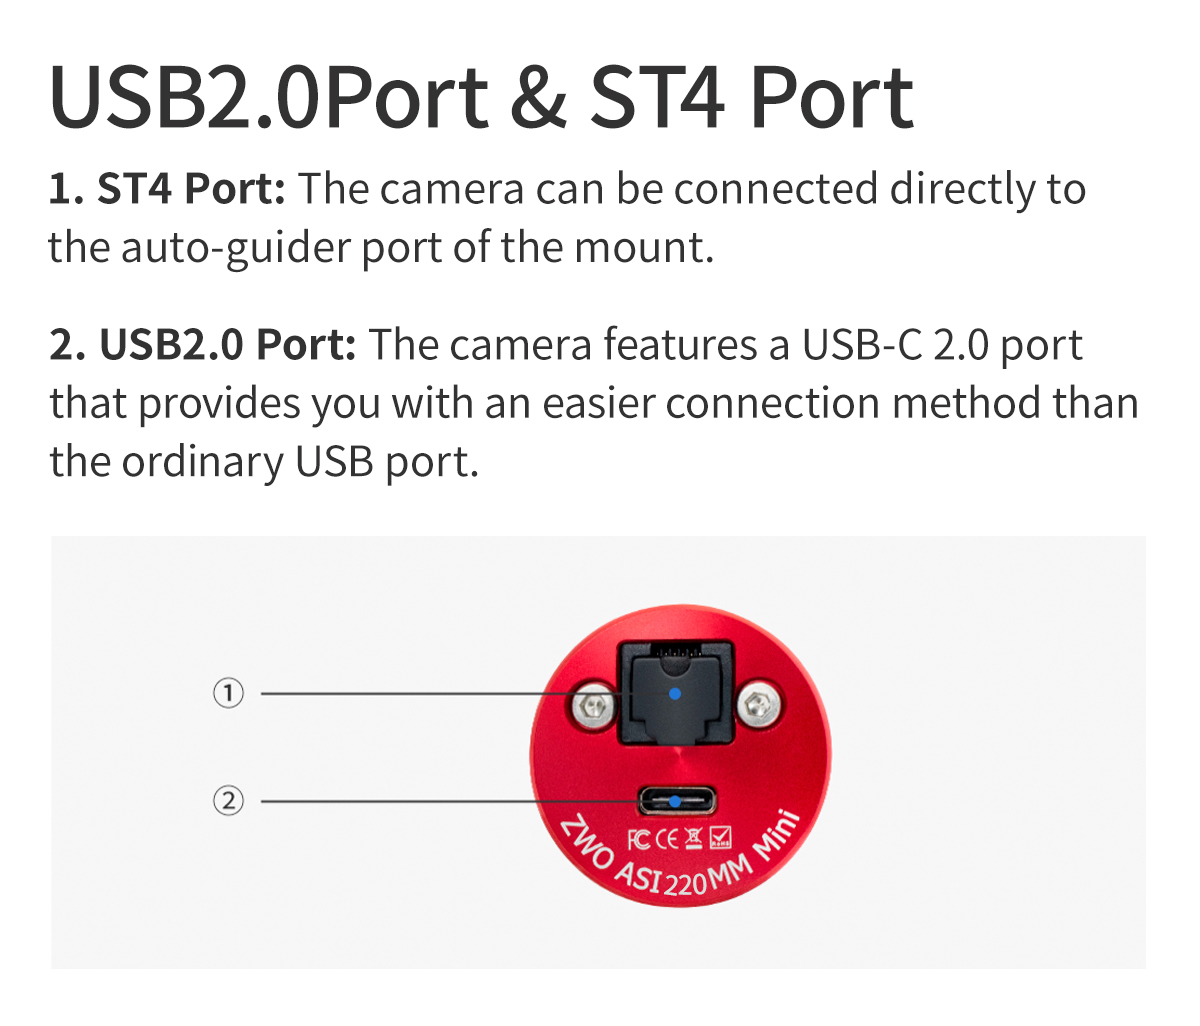  ASI 220 MM Mono Mini - camera USB 2.0 per guida planetaria e imaging 